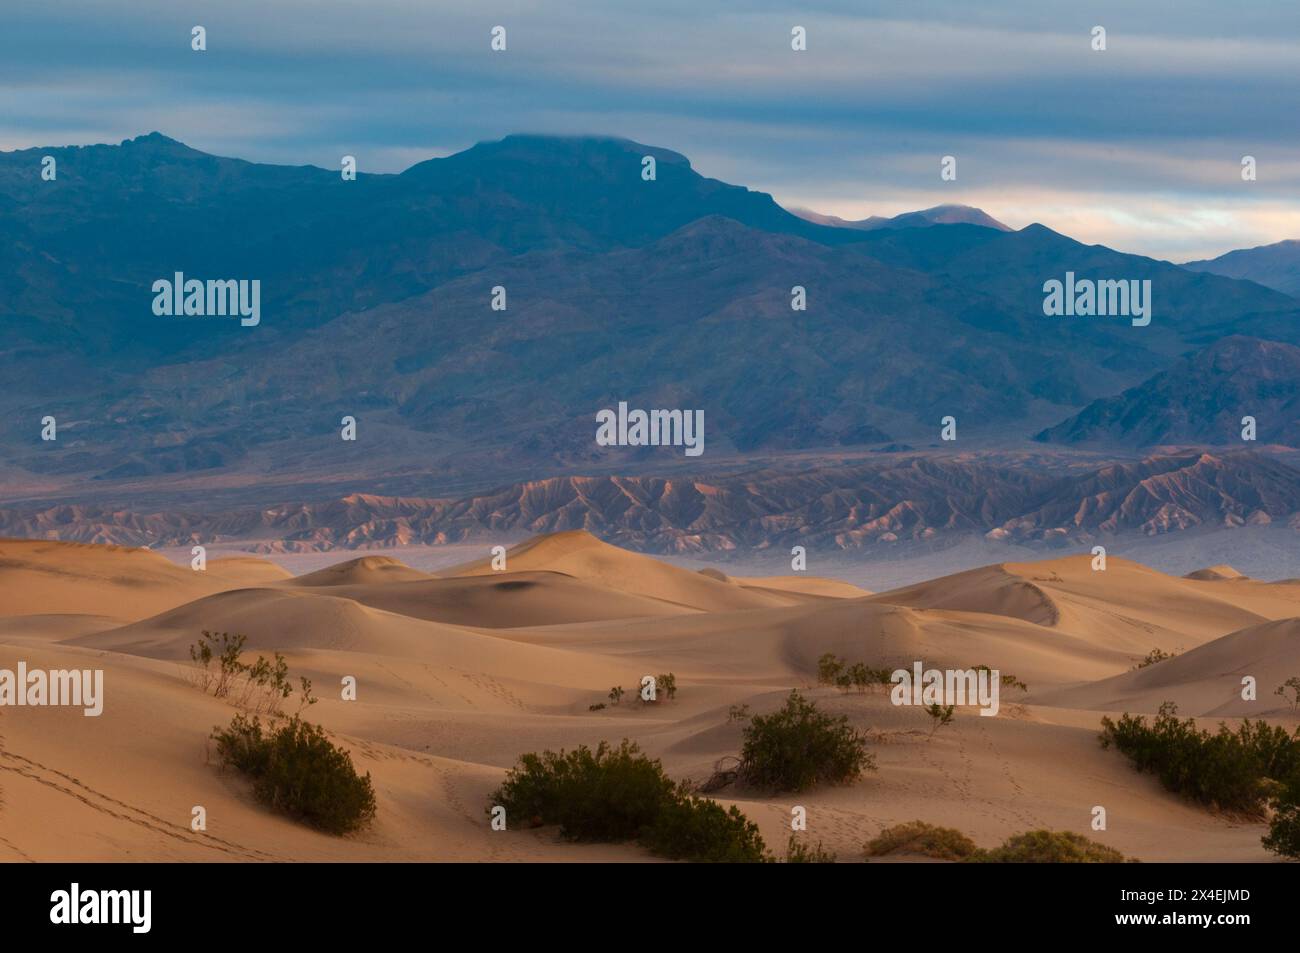 La lumière du soleil met en évidence les dunes de sable dans la région de Stovepipe Wells, dans la vallée de la mort.Parc national de Death Valley, Californie, États-Unis. Banque D'Images